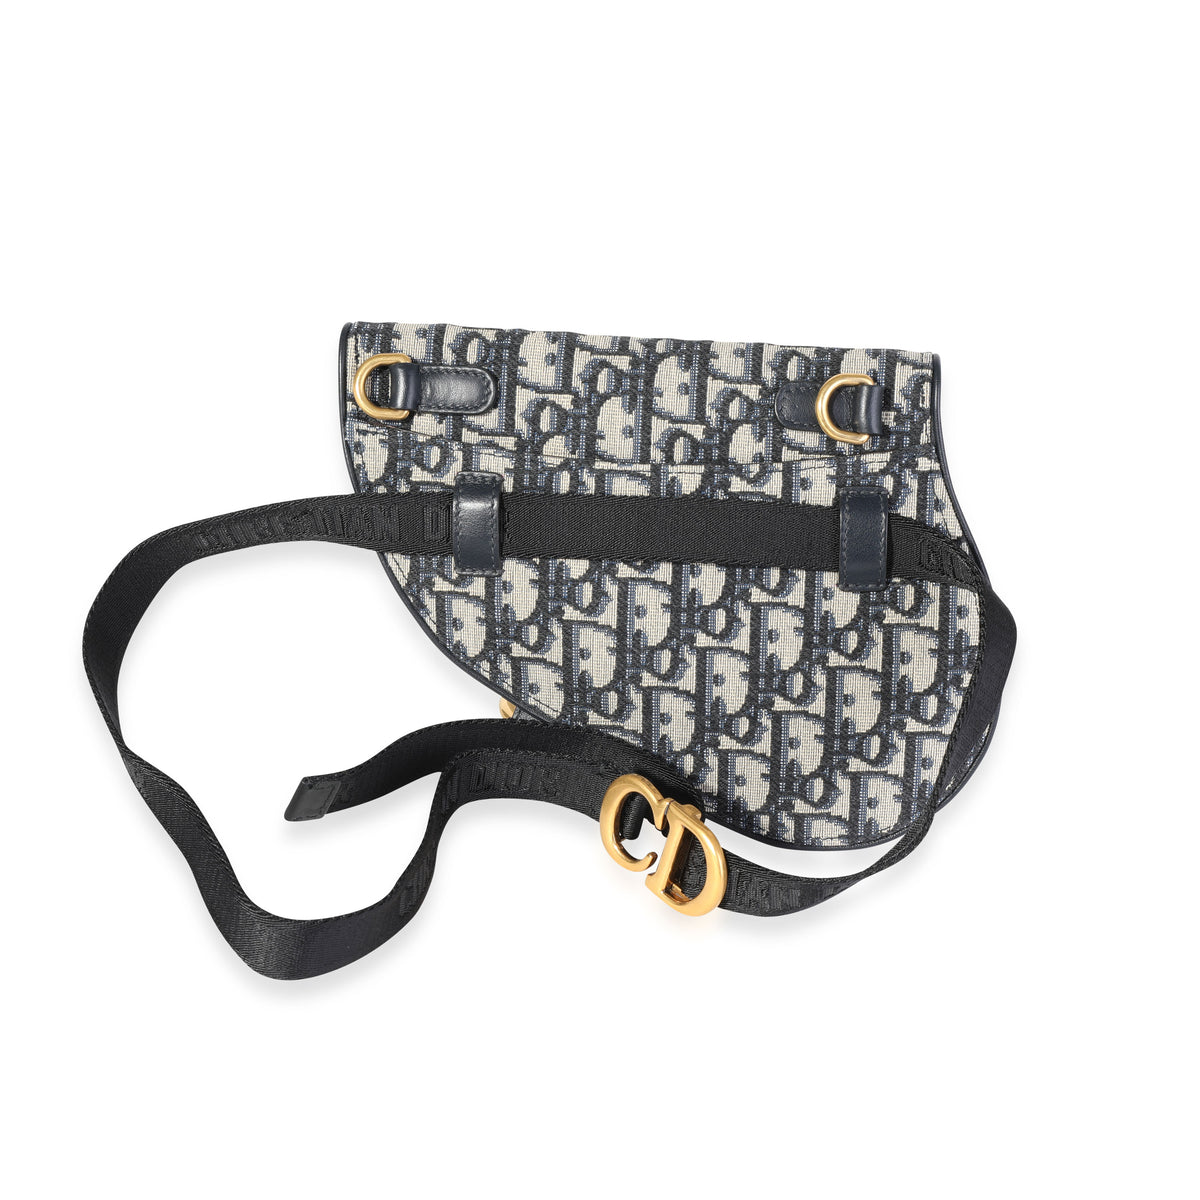 Dior Saddle Belt Bag Oblique Jacquard Beige/Black in Jacquard